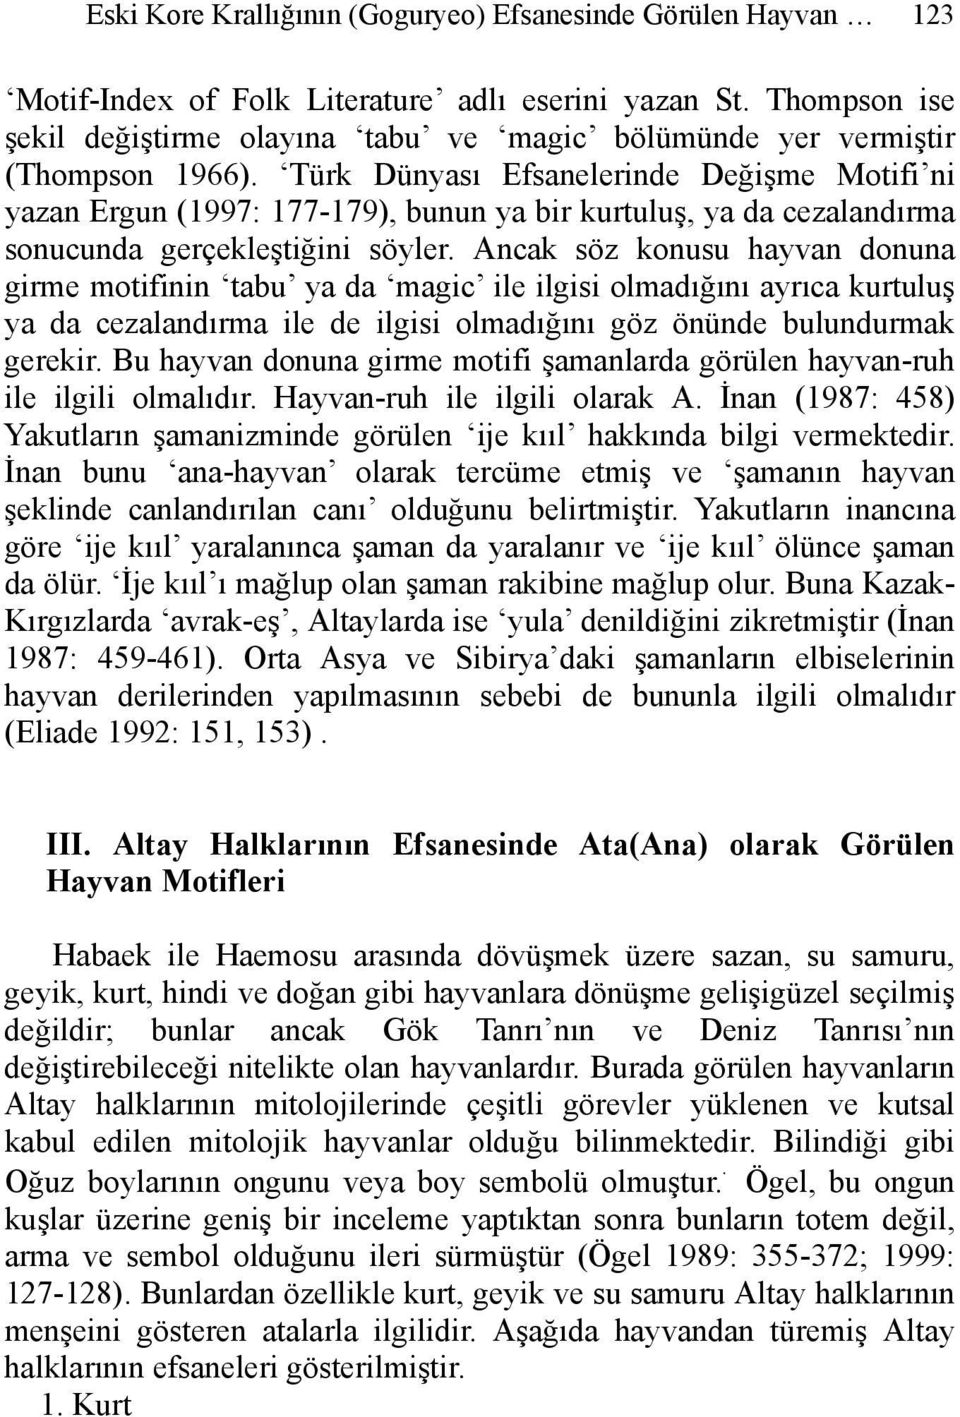 Türk Dünyası Efsanelerinde Değişme Motifi ni yazan Ergun (1997: 177-179), bunun ya bir kurtuluş, ya da cezalandırma sonucunda gerçekleştiğini söyler.